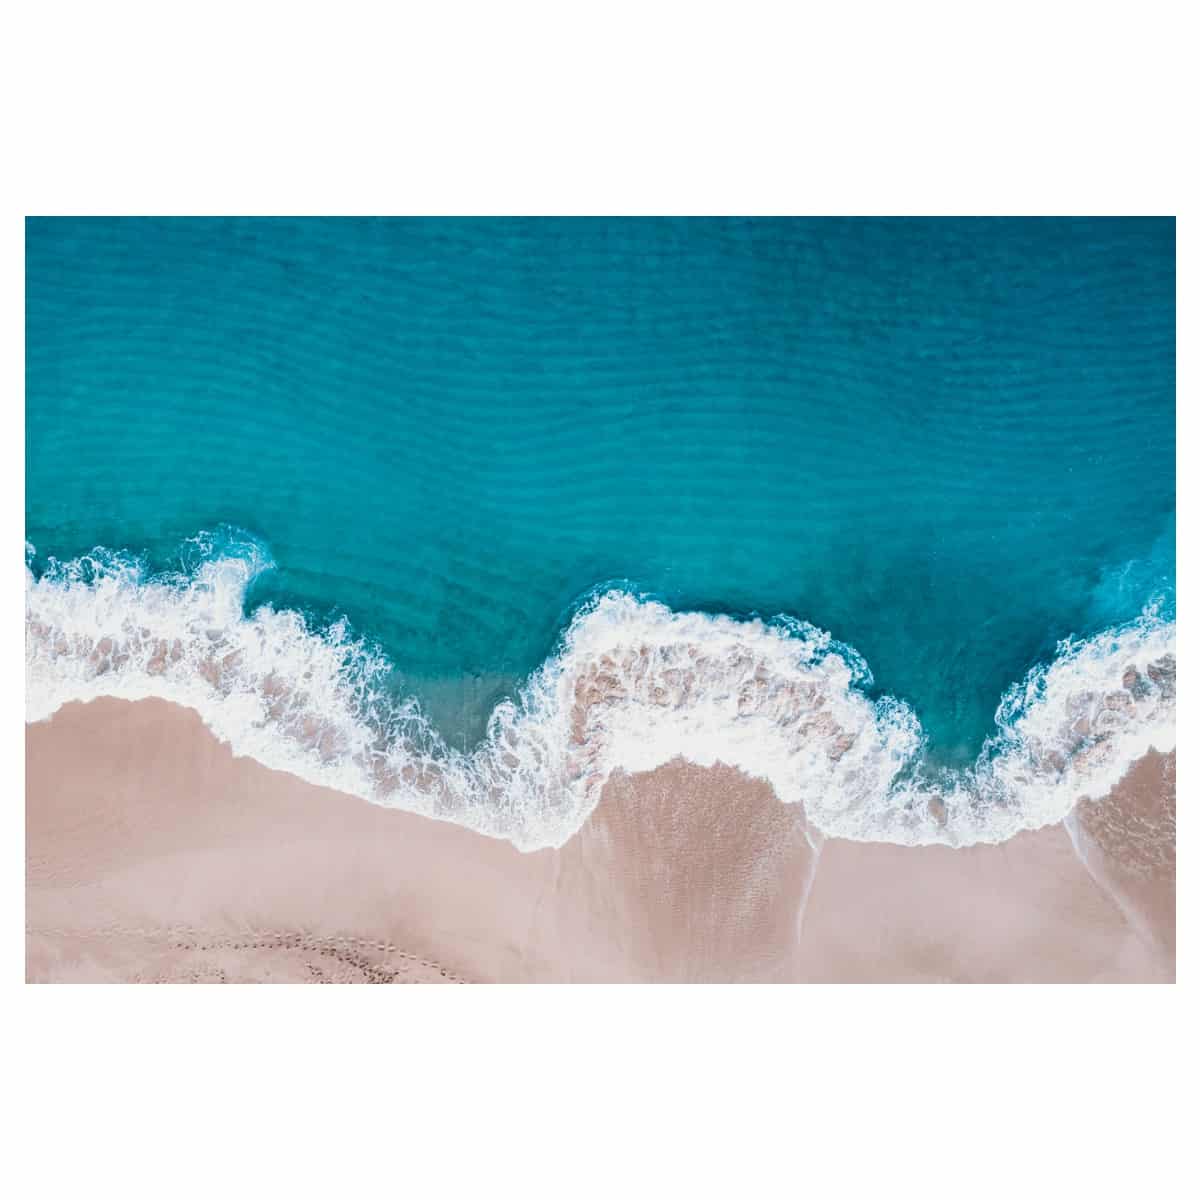 bree poort blue hawaii aerial oceanscape